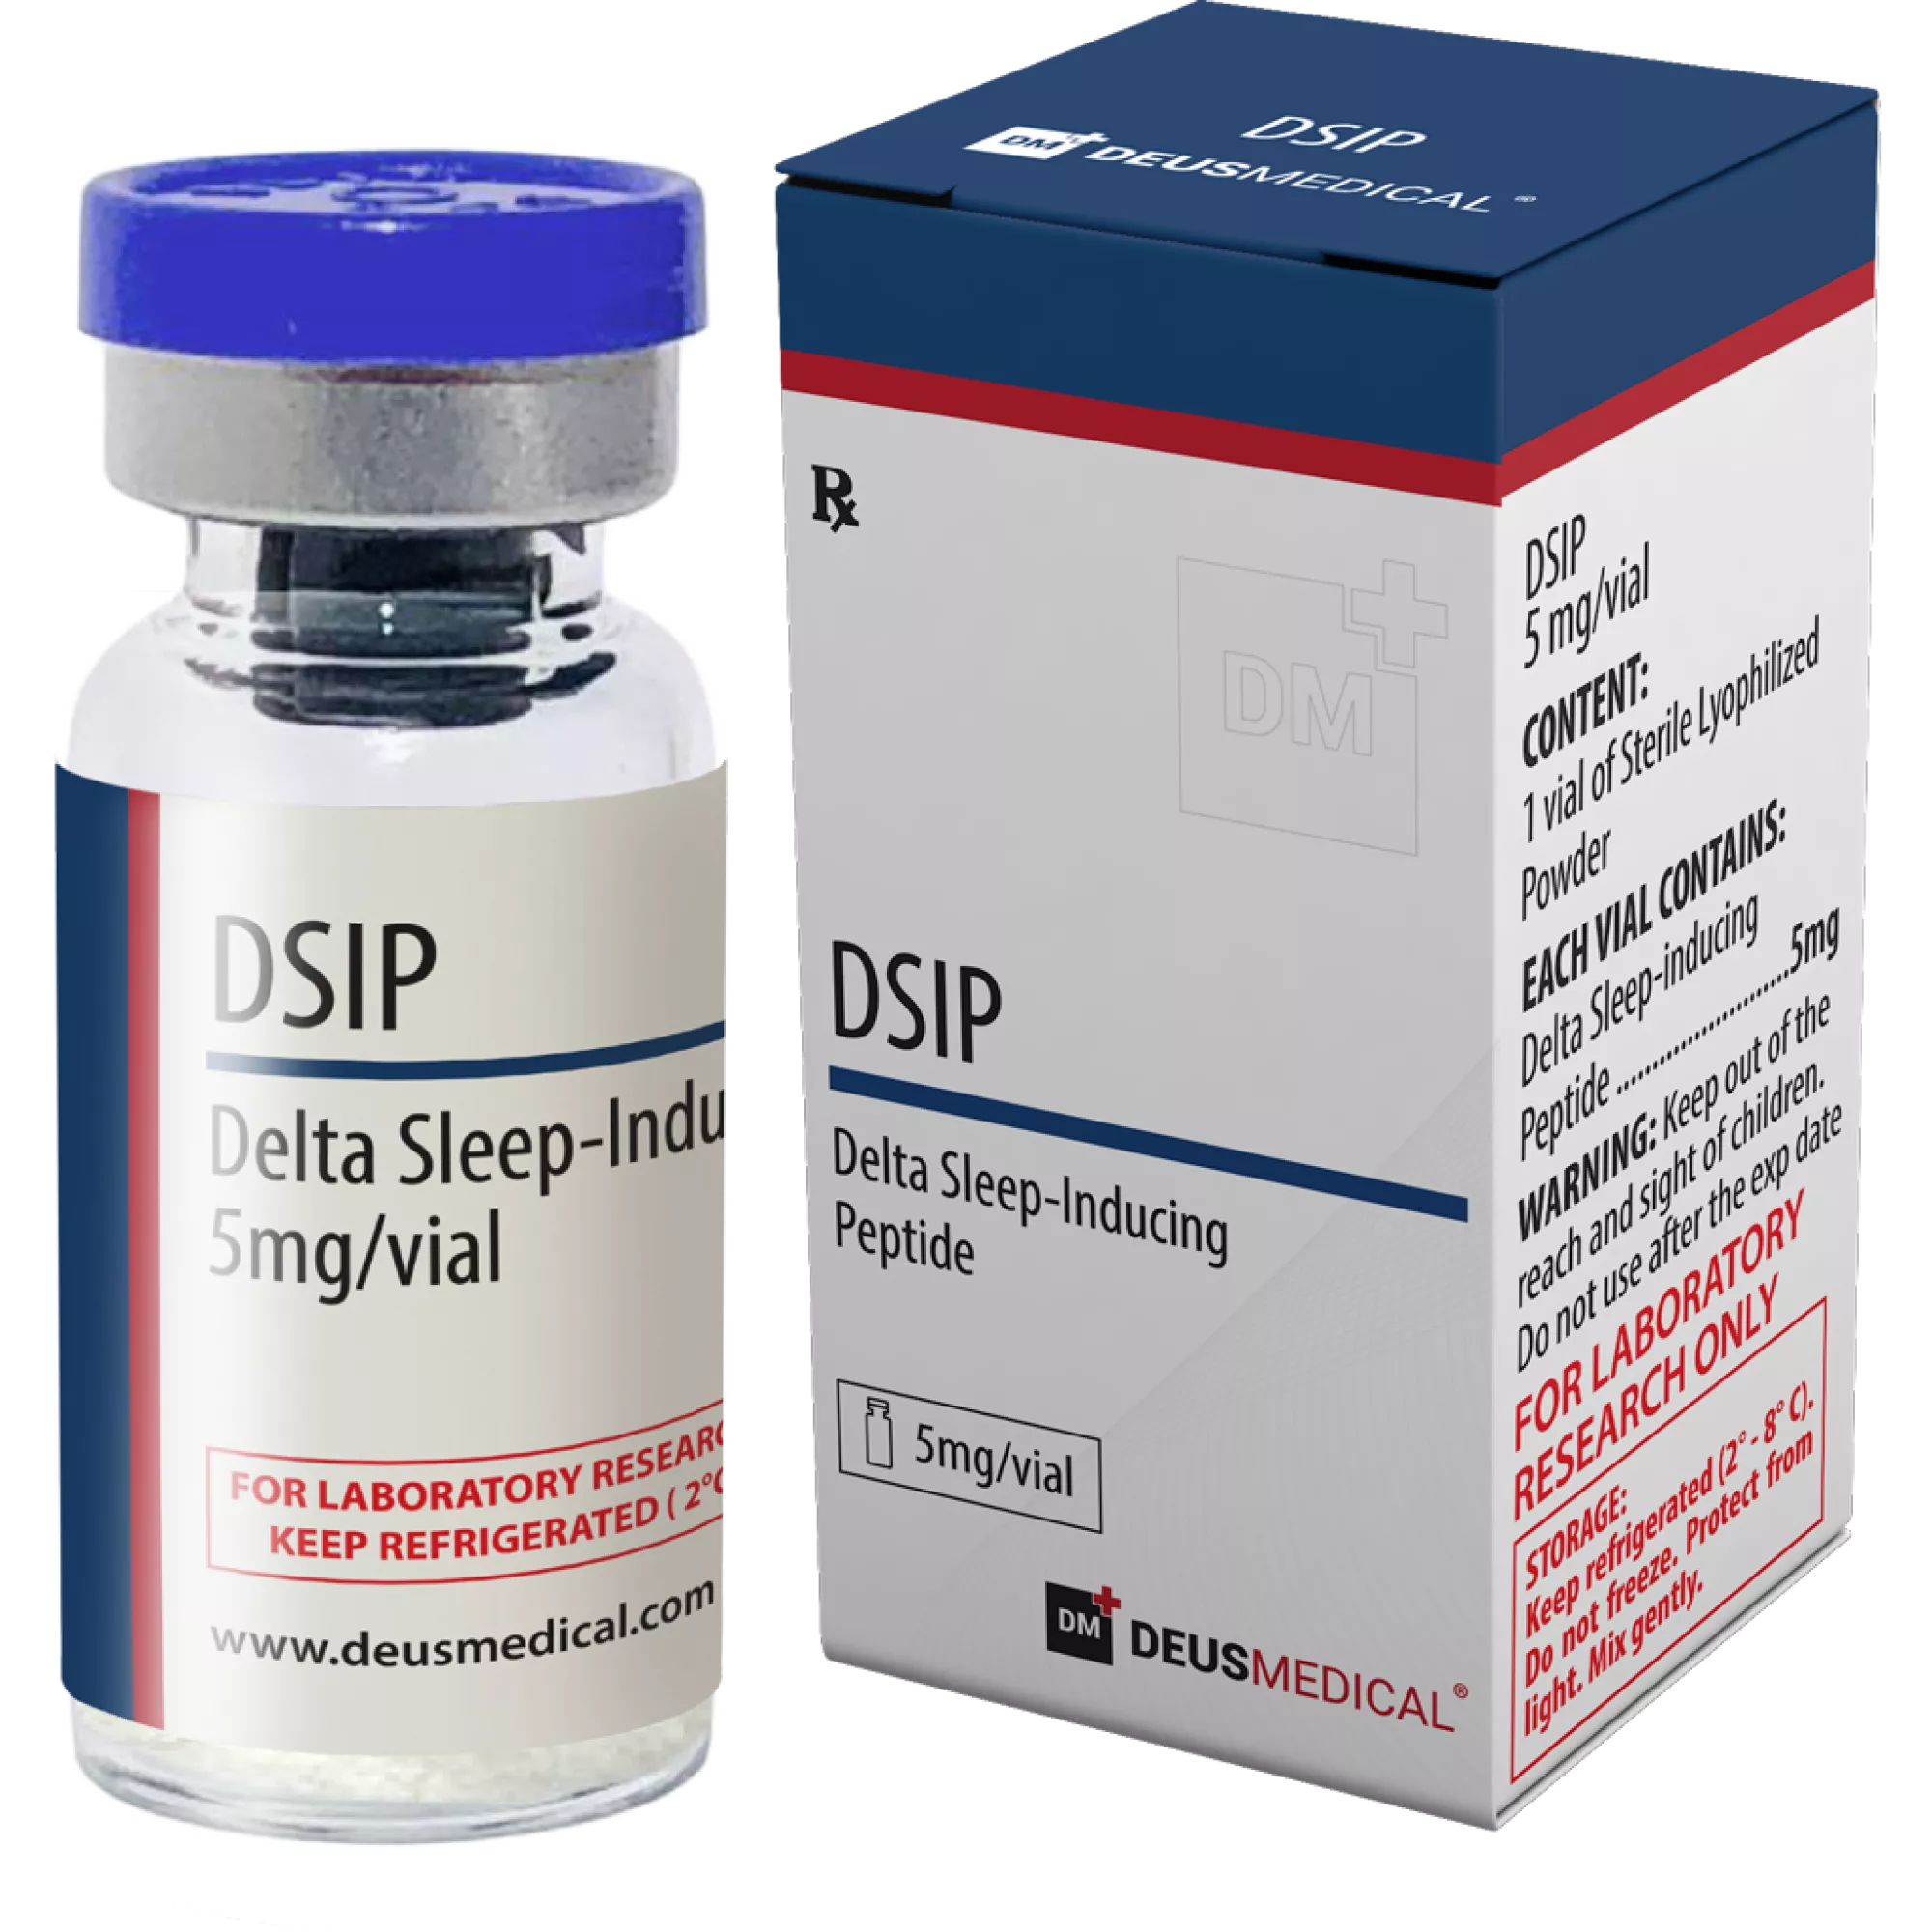 DSIP (Delta-Schlaf-induzierendes Peptid), Deus Medical, Kaufen Sie Steroide Online - www.deuspower.shop